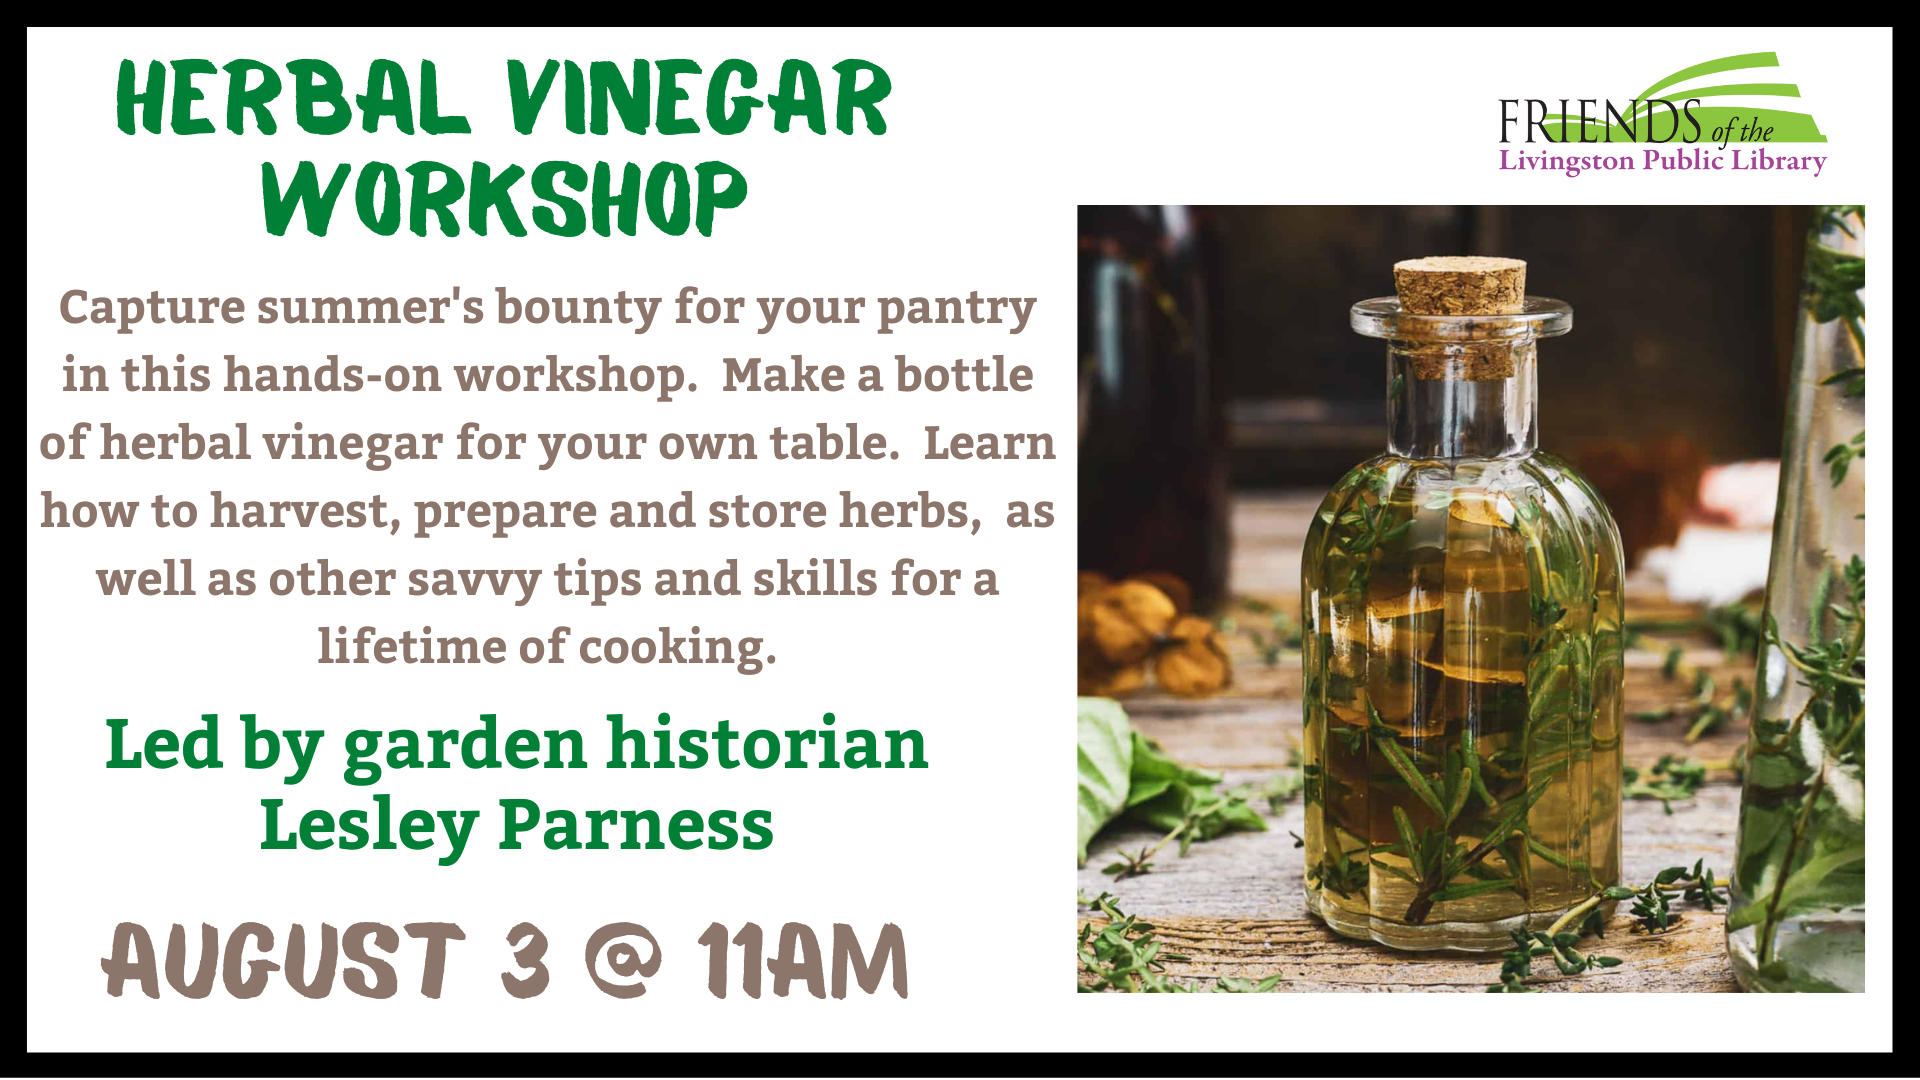 Herbal Vinegar Workshop by Lesley Parness